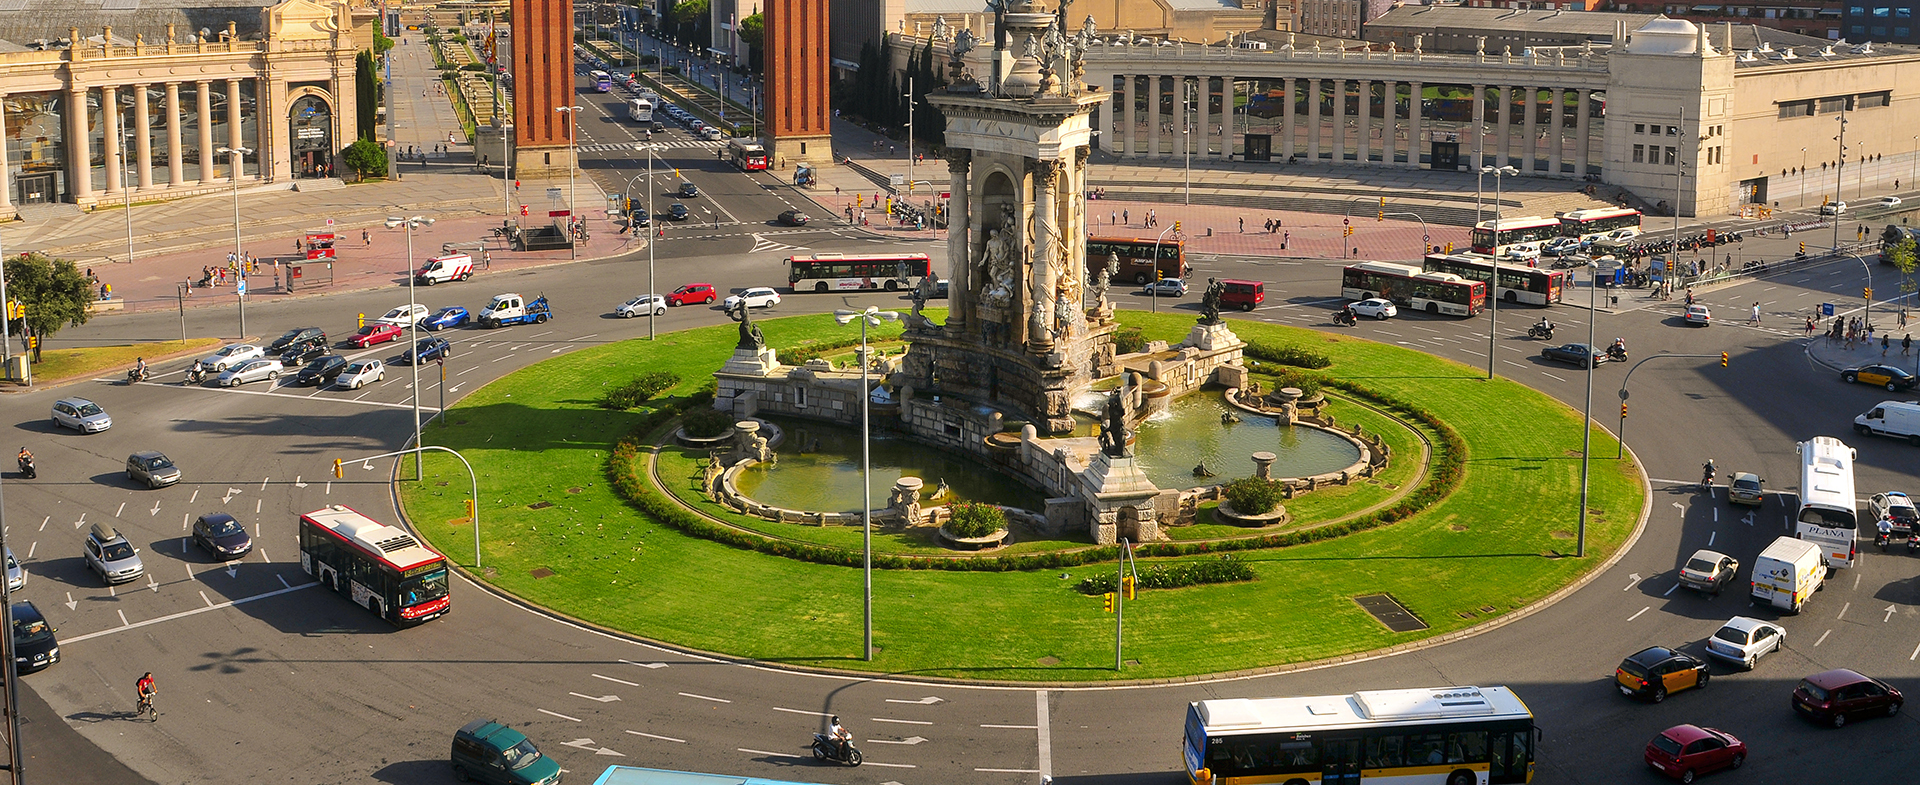 La glorieta de la Plaza de Espaa de Barcelona, regulada por semforos.